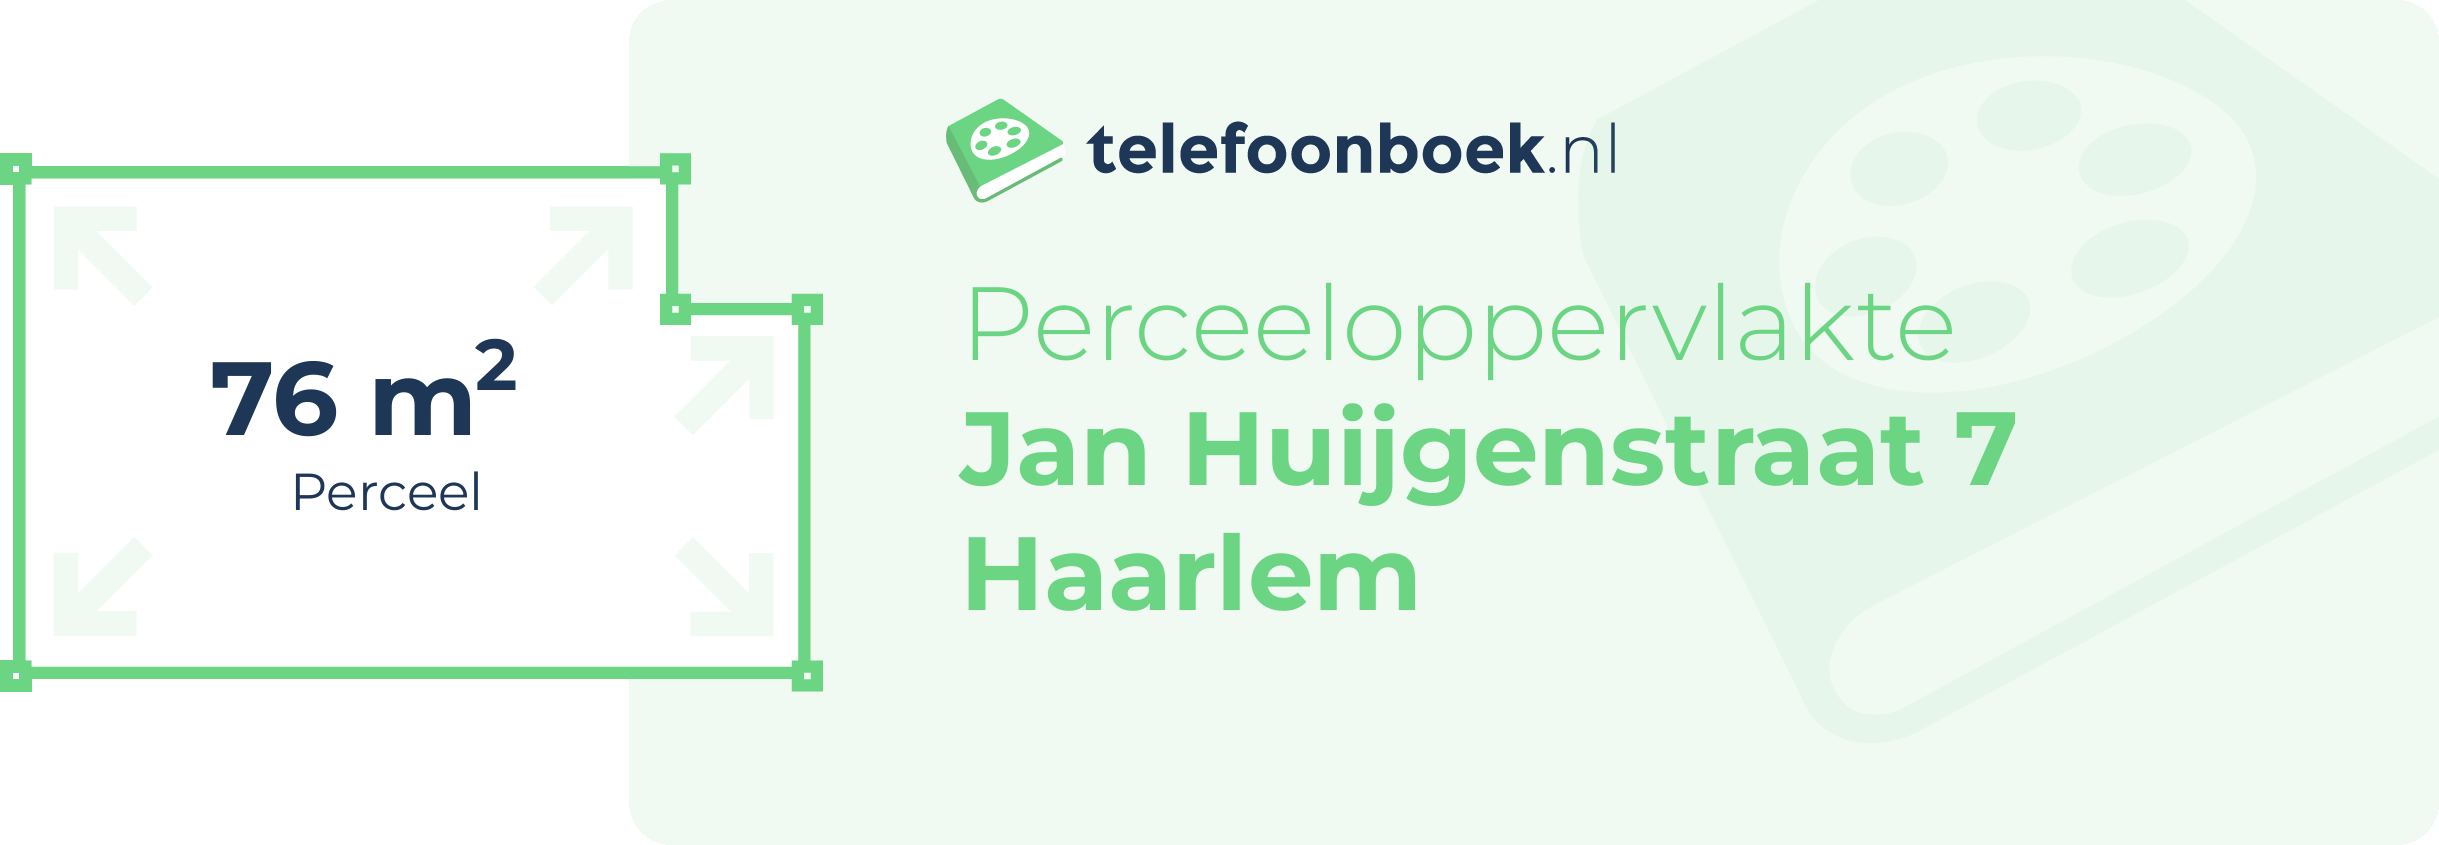 Perceeloppervlakte Jan Huijgenstraat 7 Haarlem